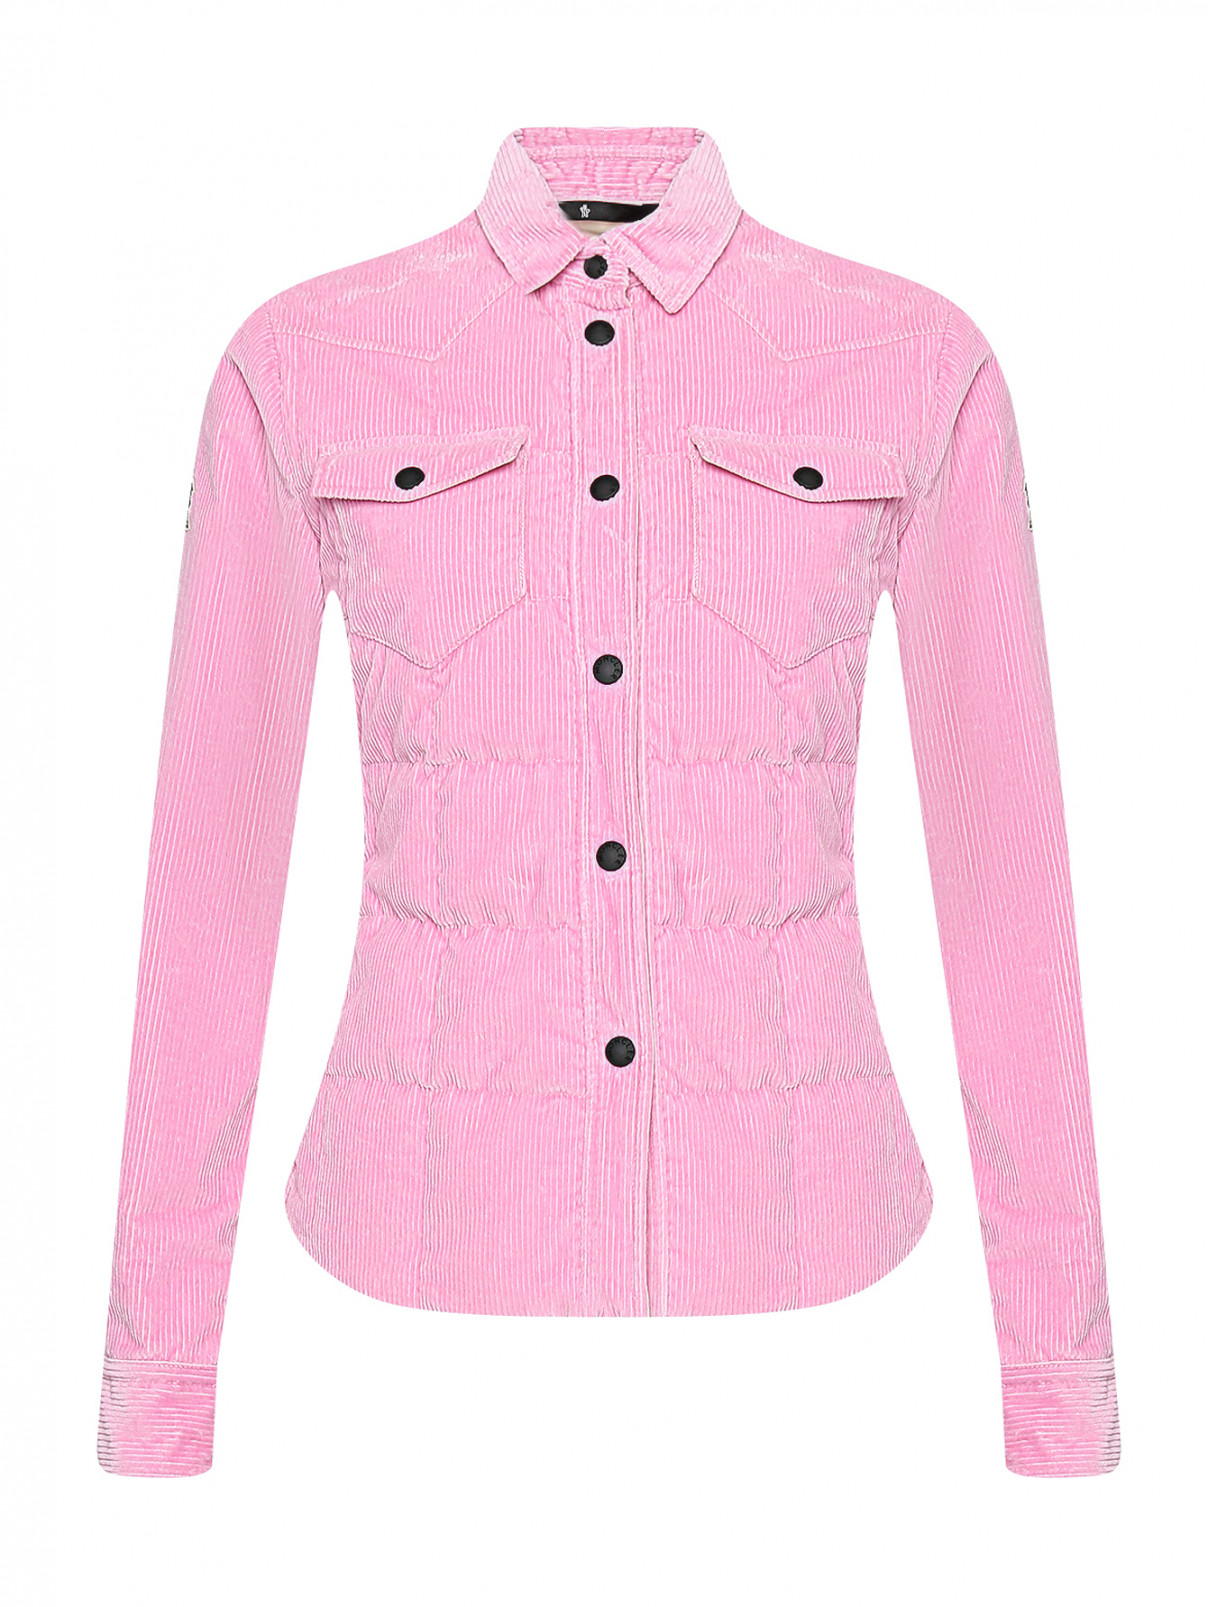 Куртка из вельвета пуховая Moncler  –  Общий вид  – Цвет:  Розовый